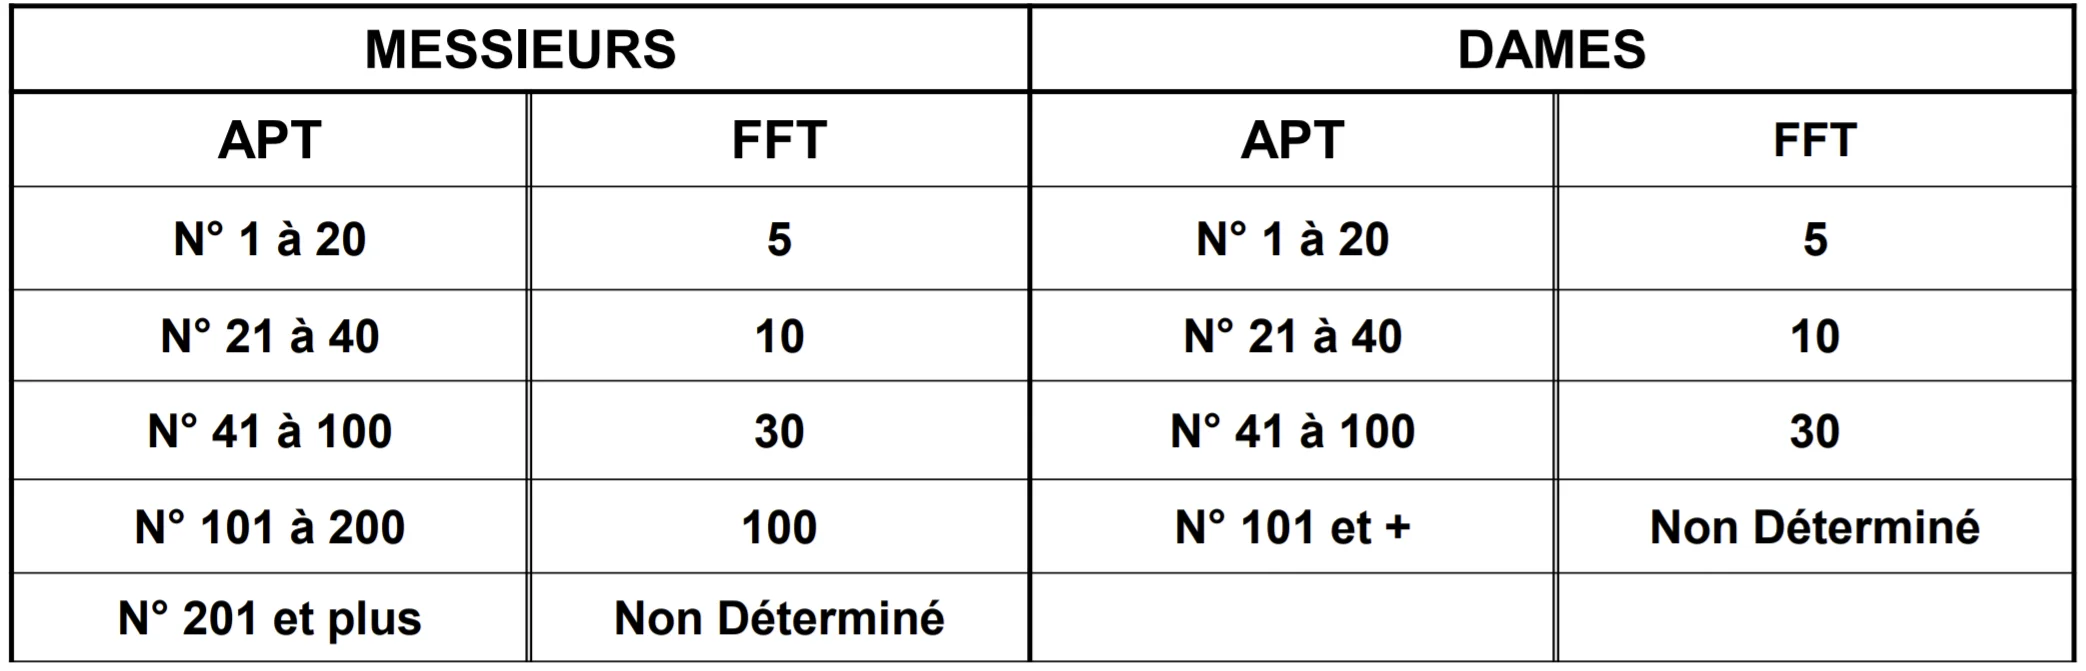 Clasificación de aptos de FFT padel tour de valoración